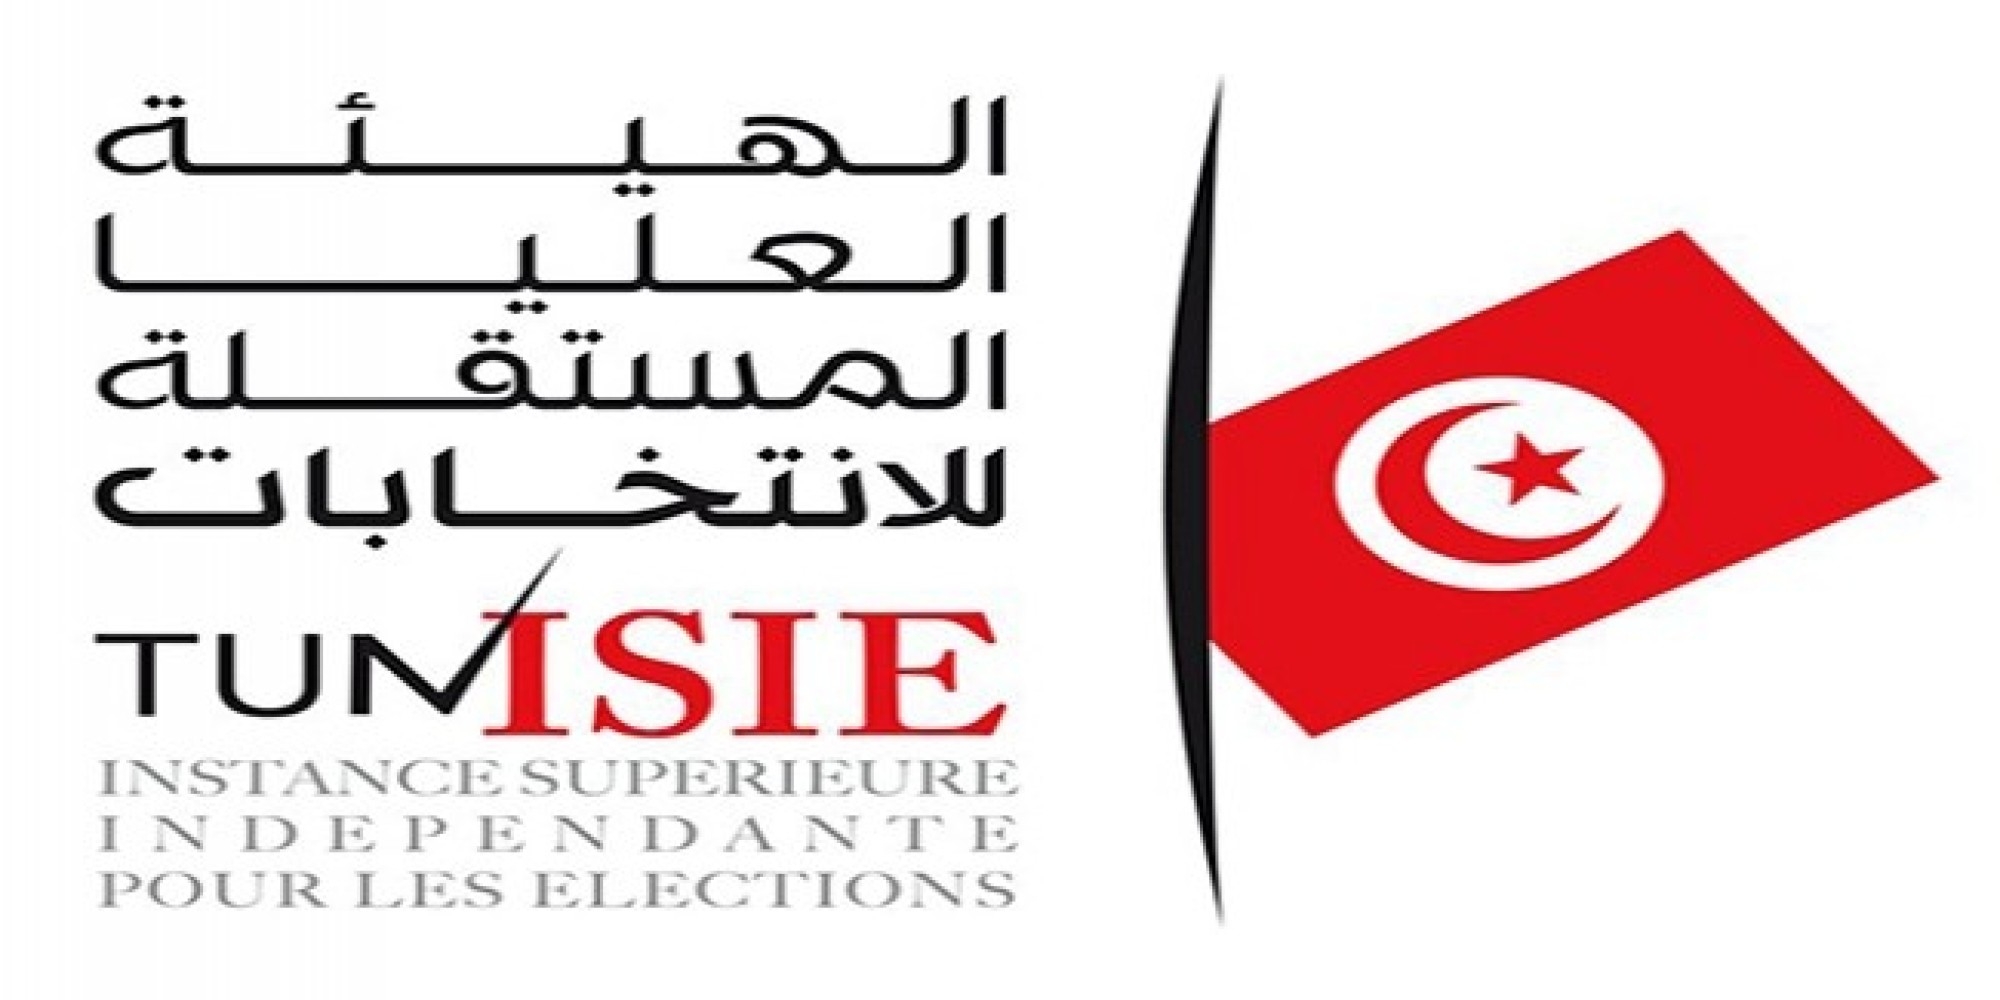 الهيئة العليا للانتخابات بتونس تتلقى دفعة مالية بقيمة 10 مليون دينار